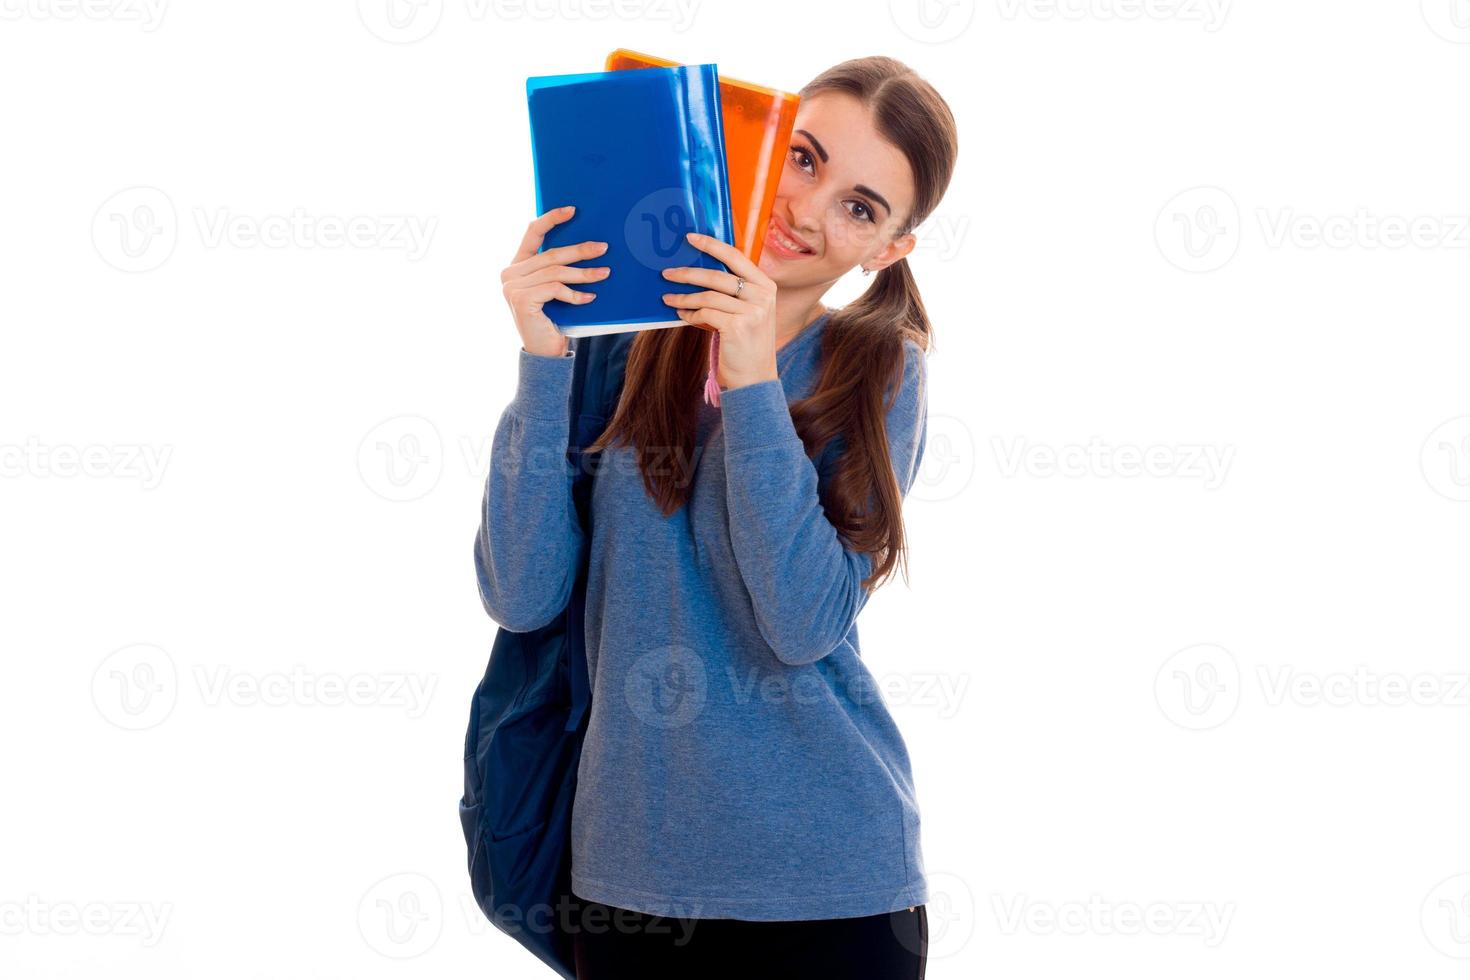 Cutie jeune étudiante fille avec sac à dos et dossiers pour cahiers dans ses mains regardant la caméra et souriant isolé sur fond blanc photo